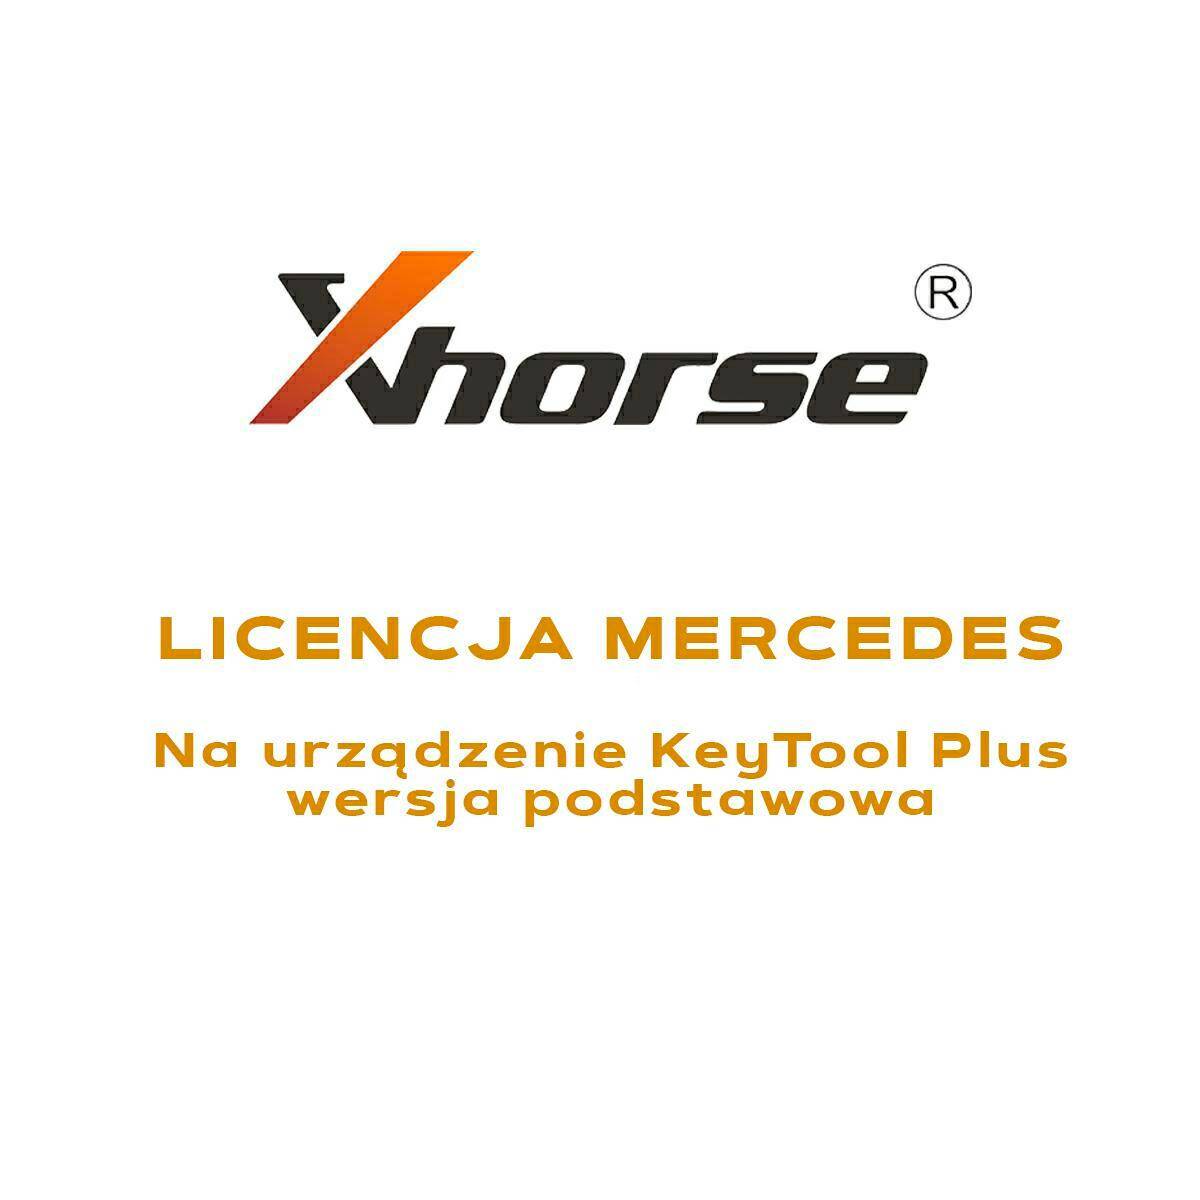 Licencja Xhorse Mercedes na Key Tool